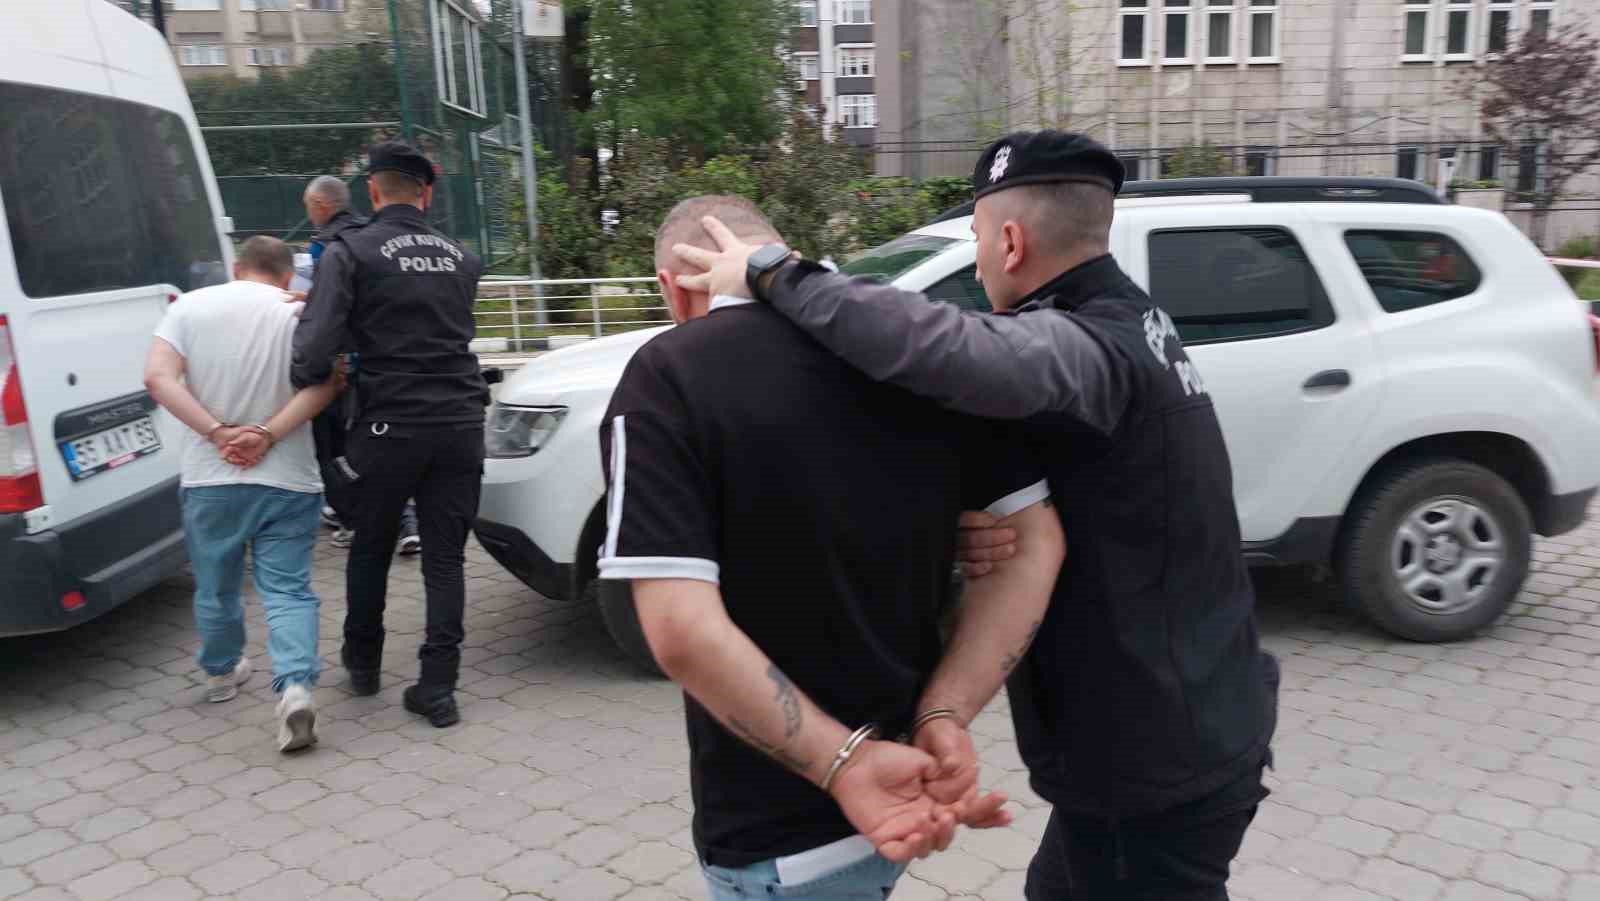 Samsun’da 4 kişi uyuşturucu ticaretinden tutuklandı
